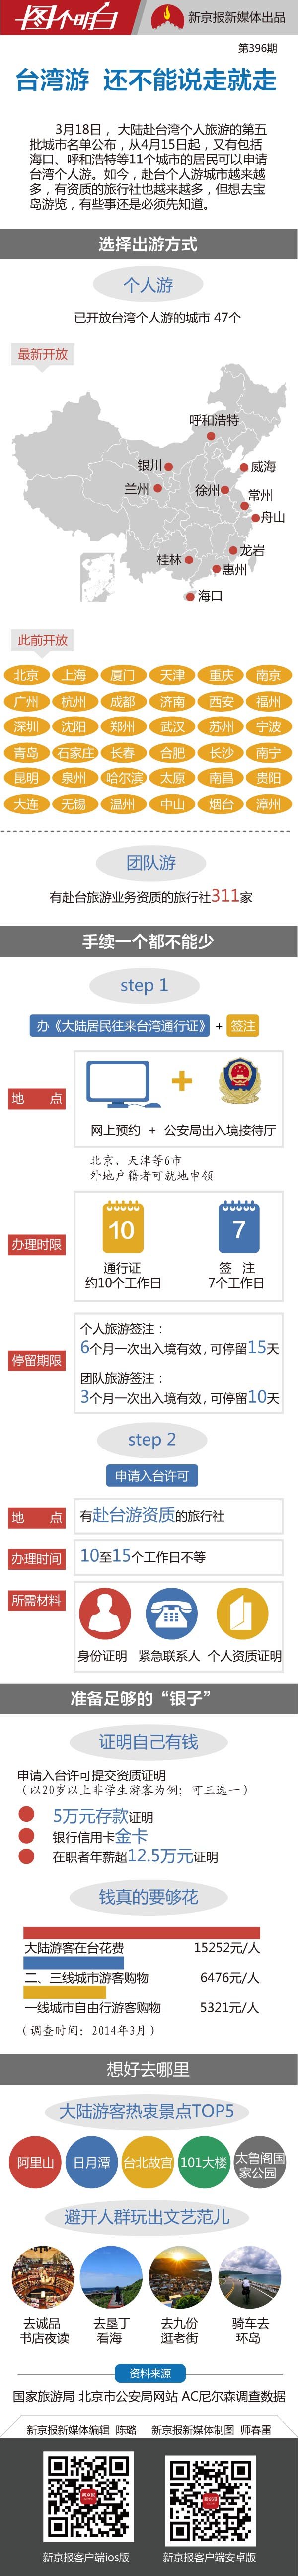 台湾游还不能说走就走一图看懂申请程序 图纸 新京报网